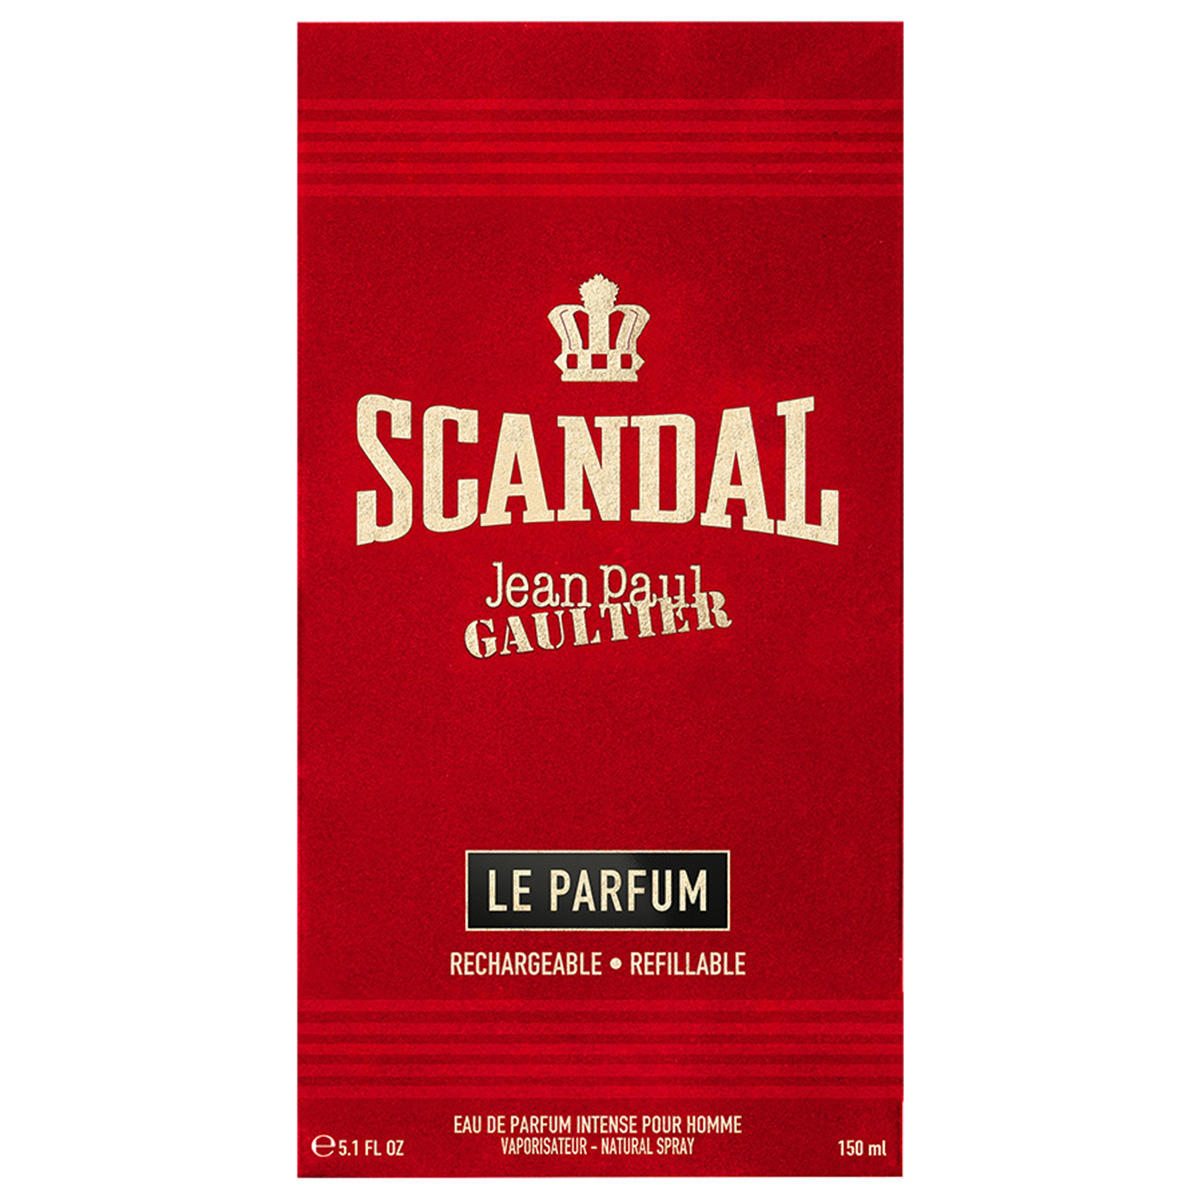 Jean Paul Gaultier Scandal Pour Homme Le Parfum Eau de Parfum Intense 150 ml - Refillable - 3